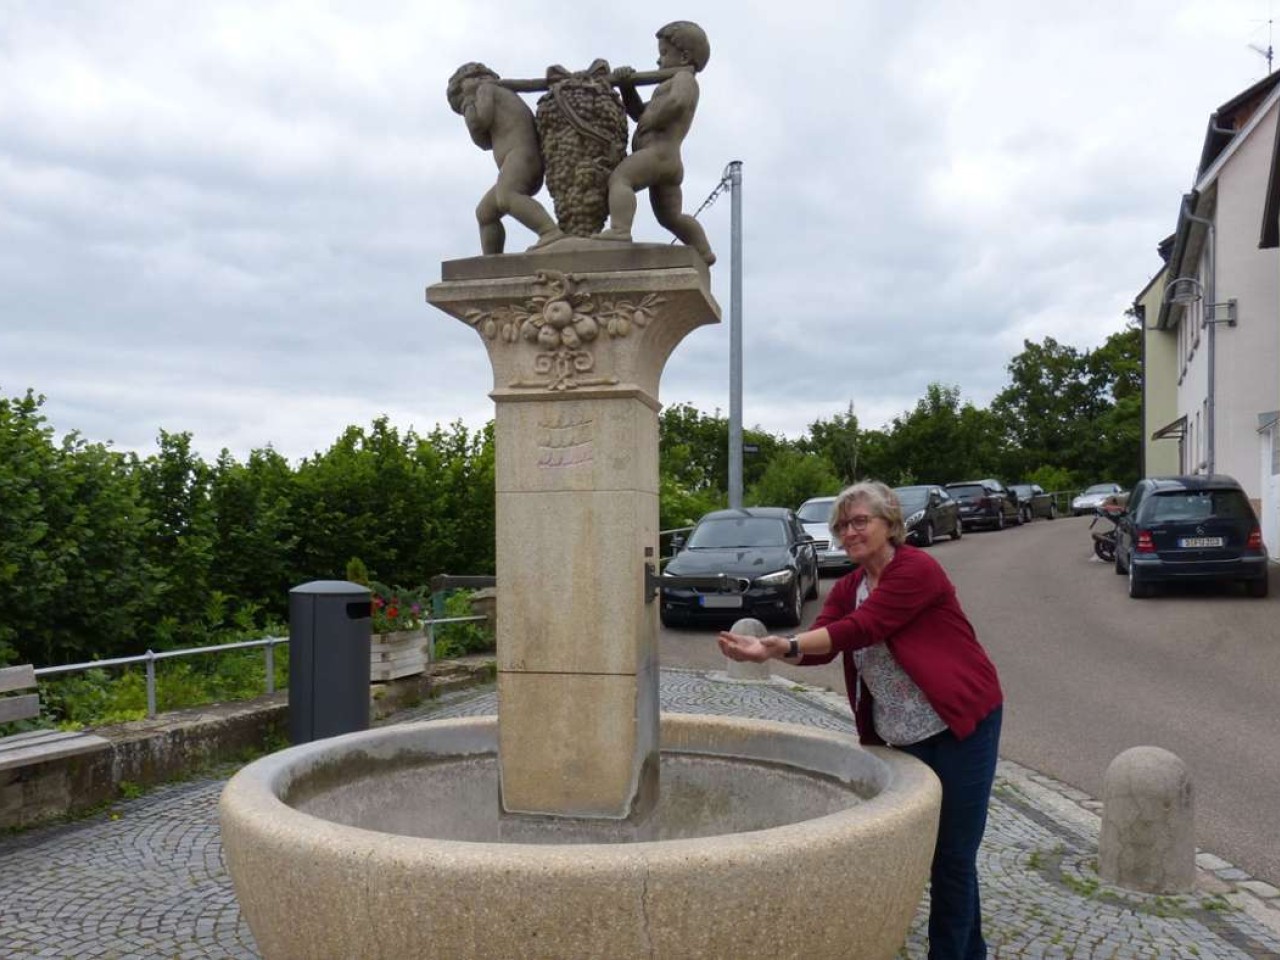 Kalebsbrunnen in Rotenberg: Ein Reichtum der Stadt – aber  ohne Wasser